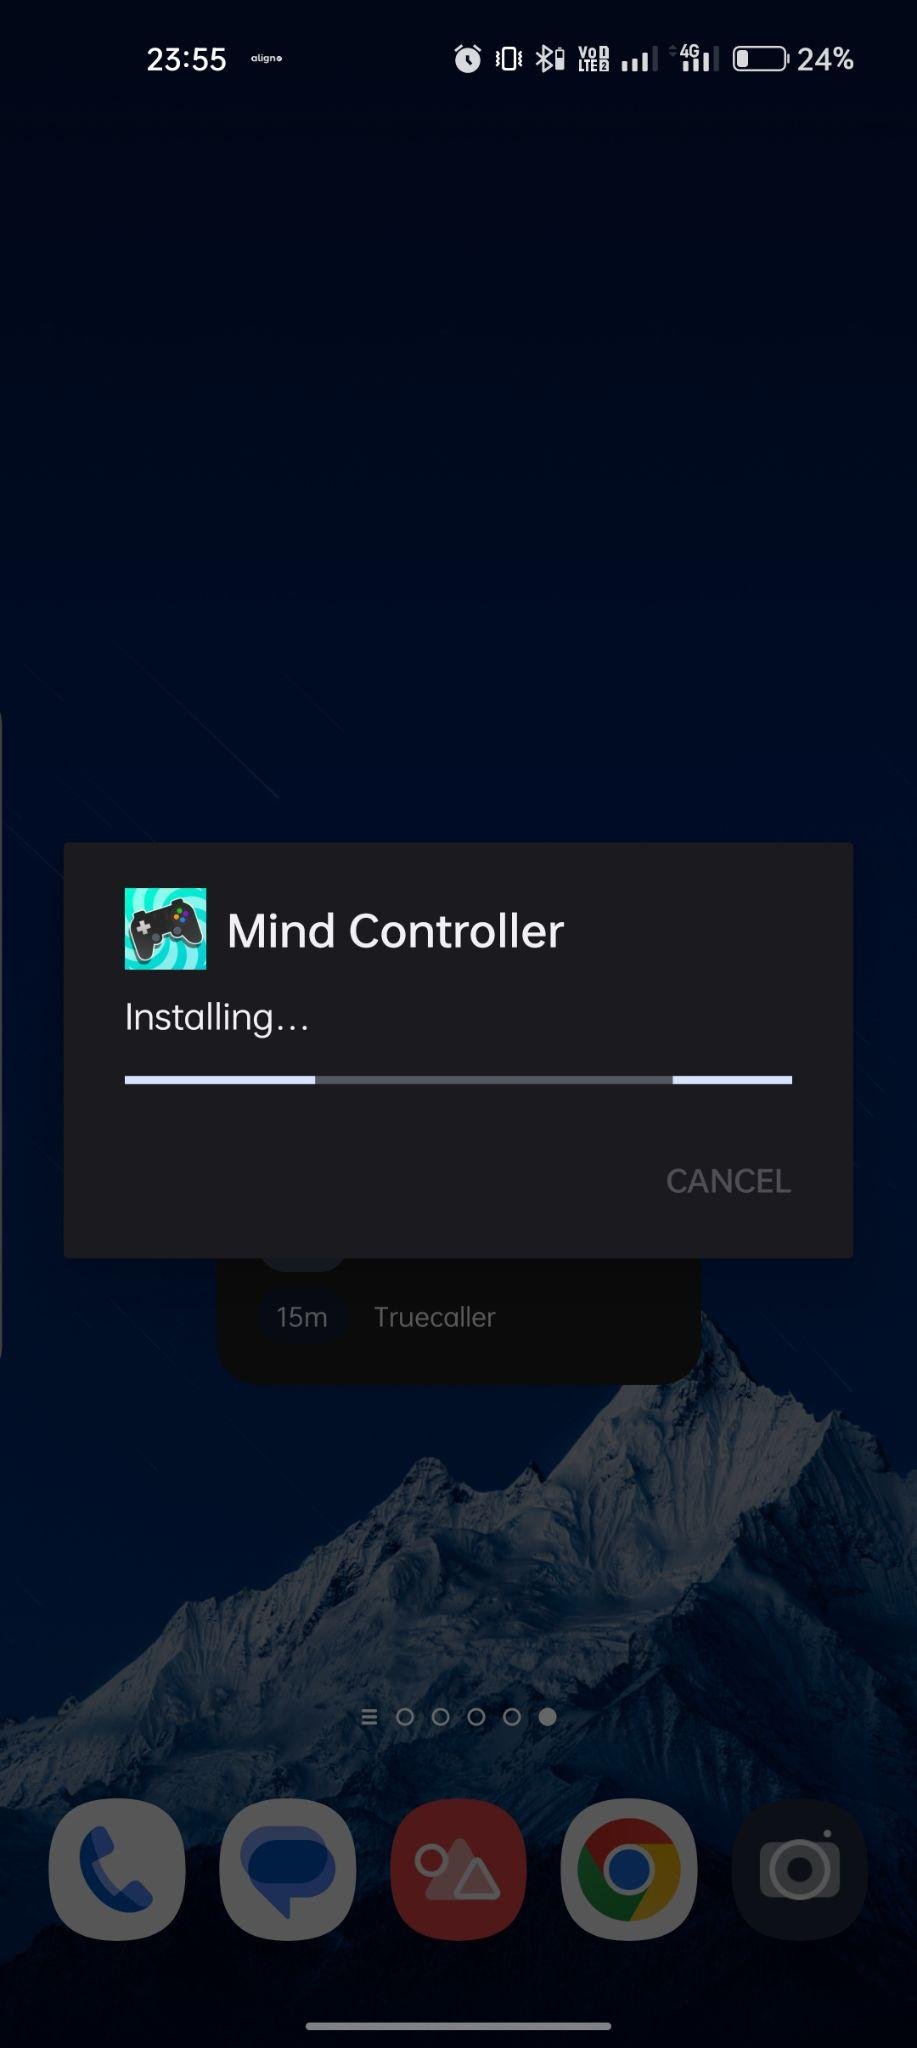 Mind Controller apk installing